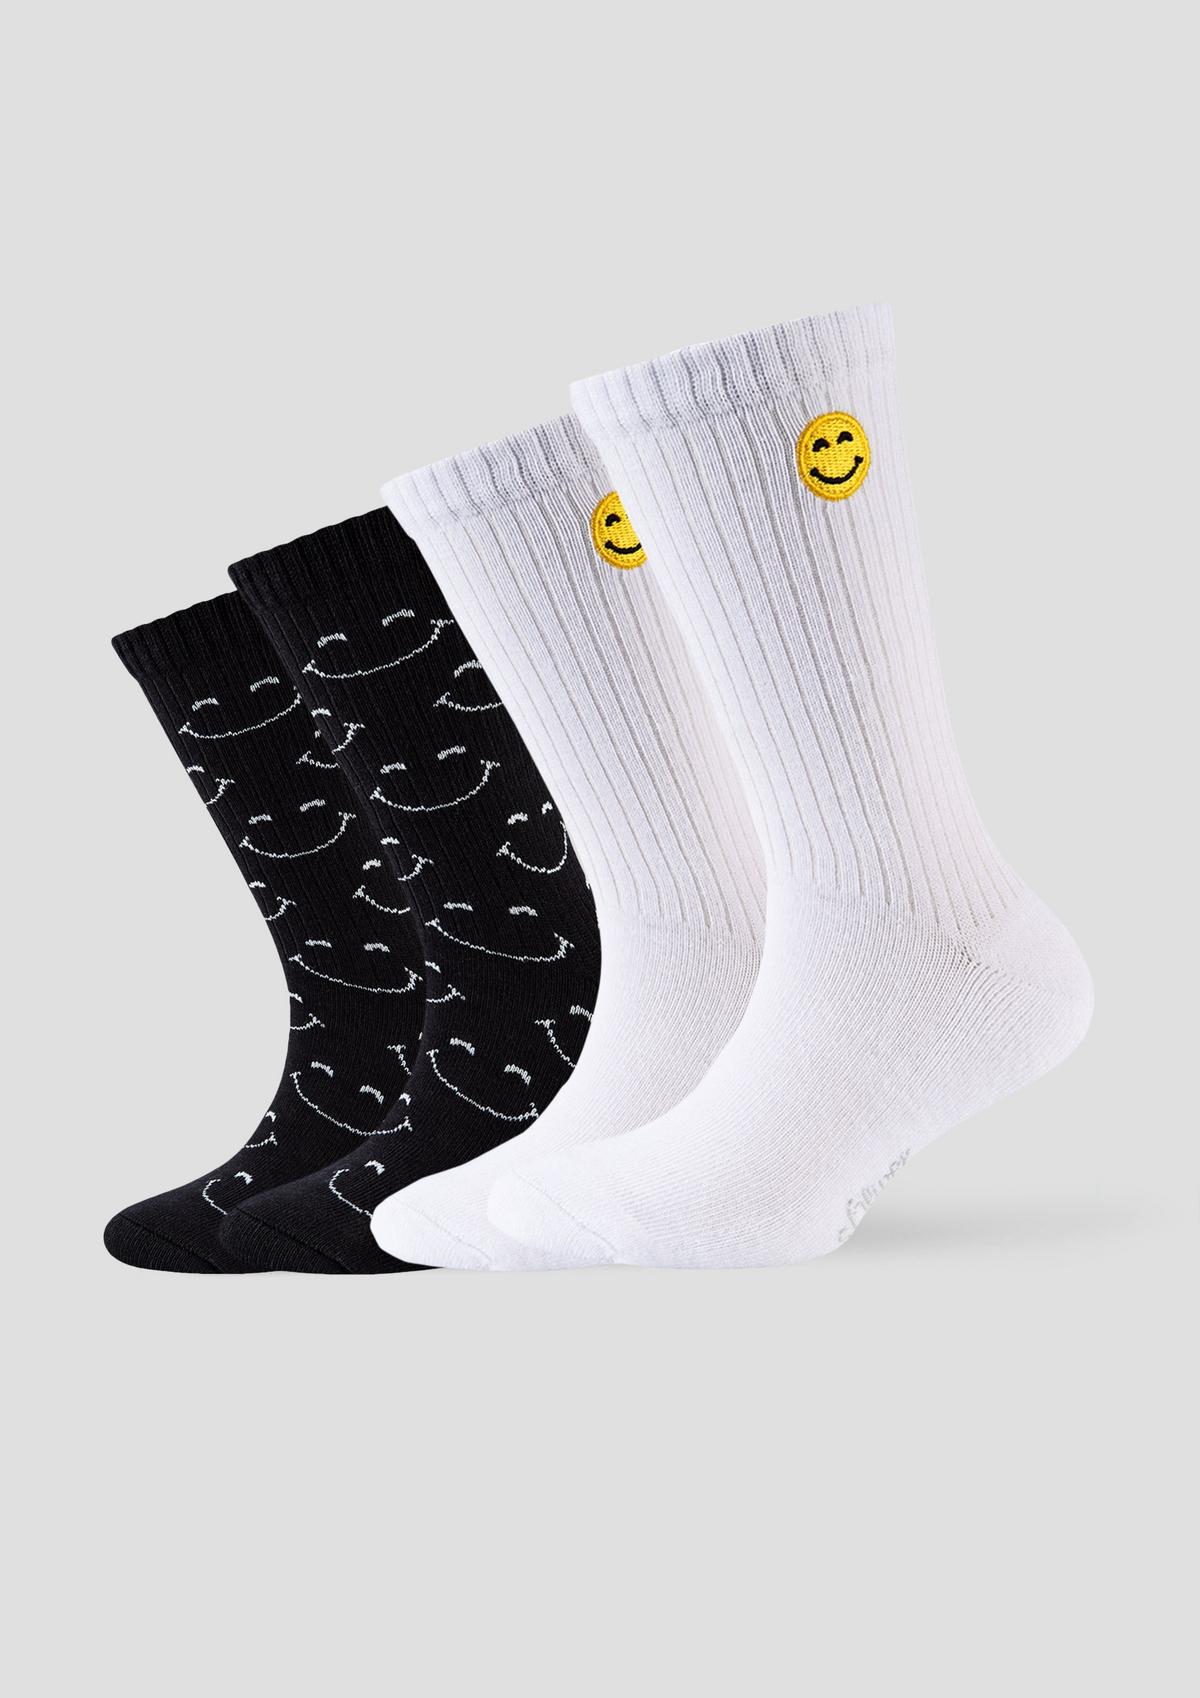 Socken weiß - mit Smiley-Details